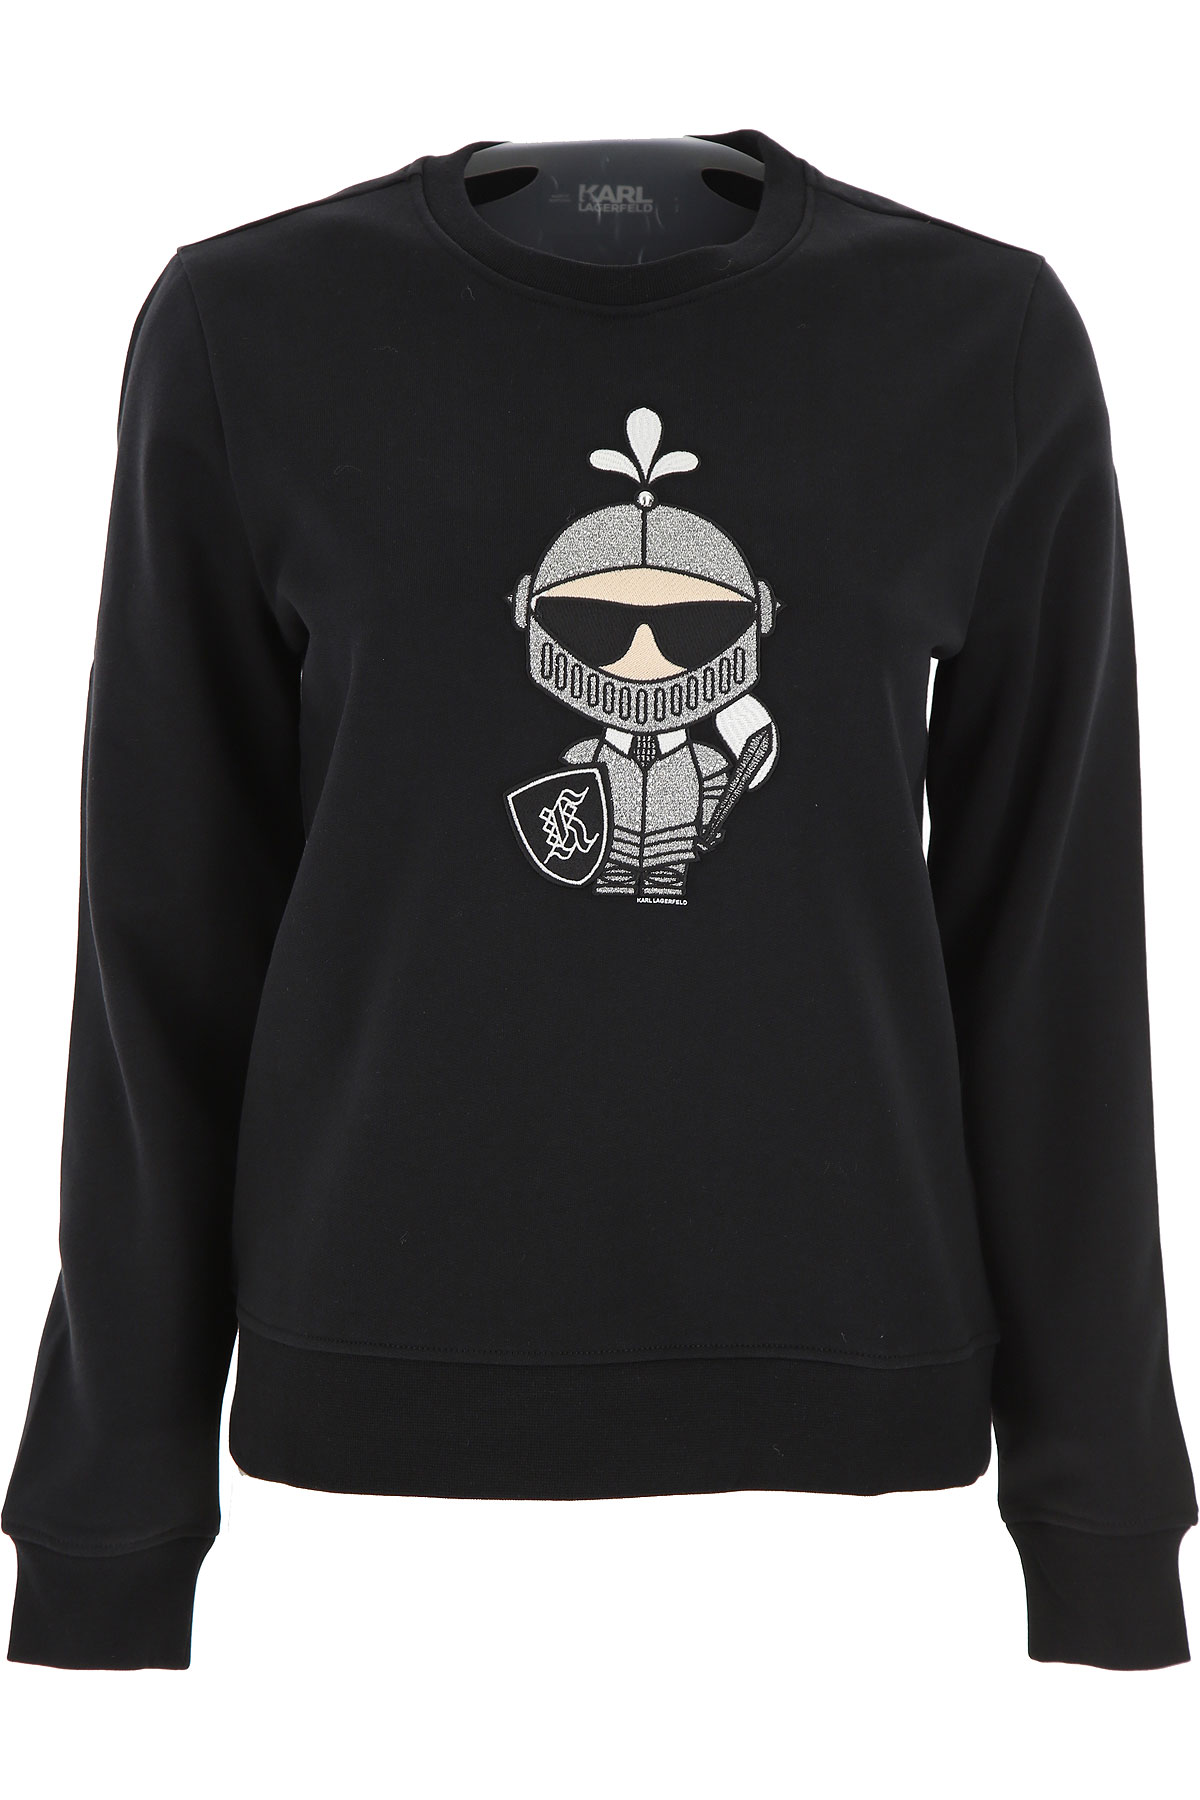 Karl Lagerfeld Sweatshirt für Damen, Kapuzenpulli, Hoodie, Sweats Günstig im Sale, Schwarz, Baumwolle, 2017, 40 M